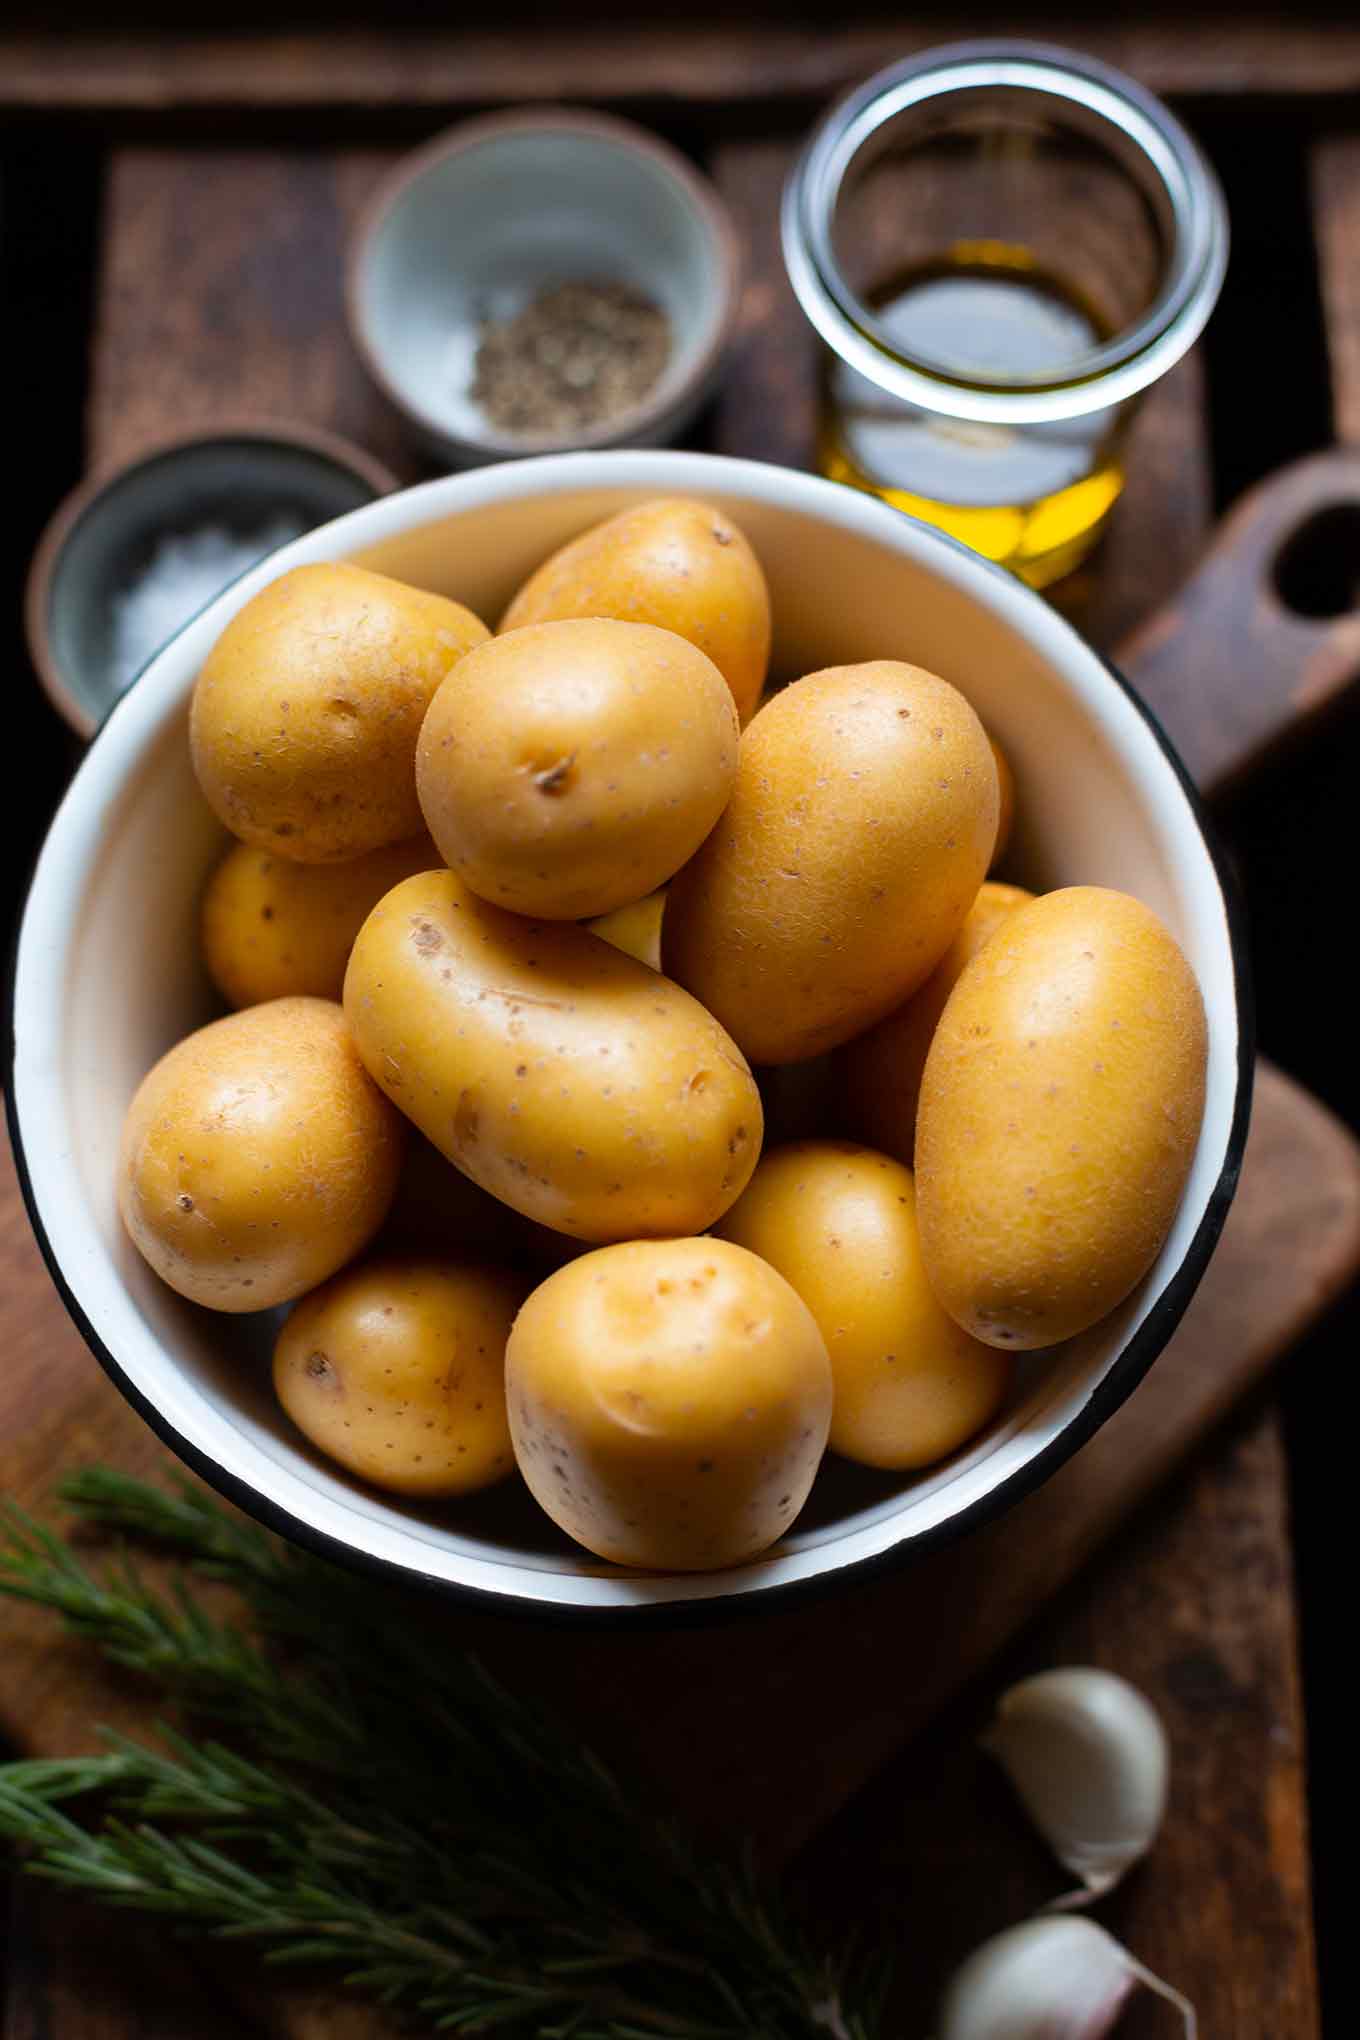 Zutaten für super knusprige und schnelle Rosmarinkartoffeln: Kartoffeln, Öl, Knoblauch, Rosmarin, Salz und Pfeffer.